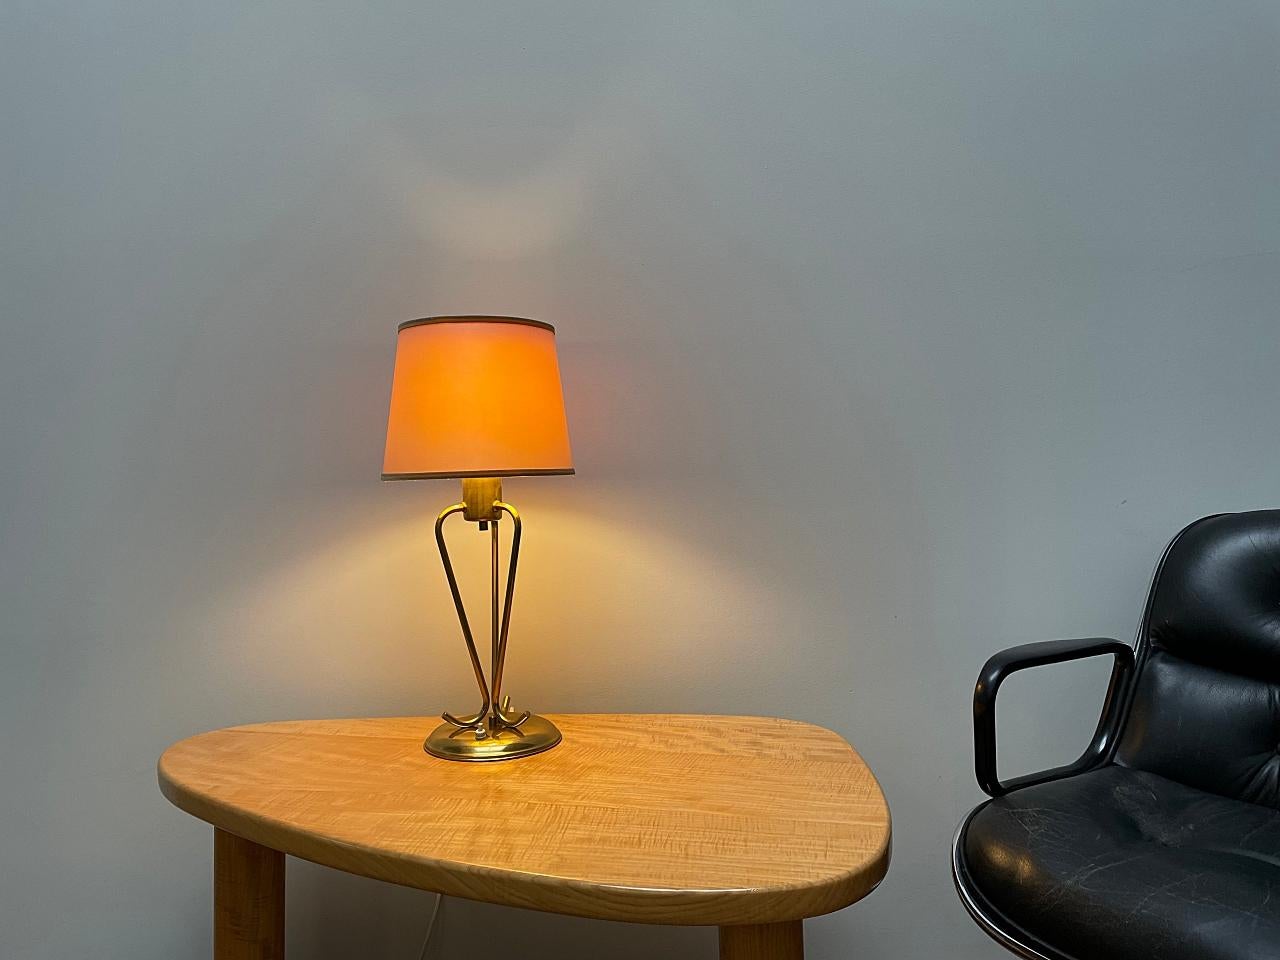 Elegante lampe de table moderne du milieu du siècle, fabriquée par J.T. Kalmar en Autriche, Vienne. 
La lampe est faite d'un socle en laiton poli à la manière de Josef Frank, qui a travaillé de nombreuses années avec Kalmar. L'abat-jour fournit une